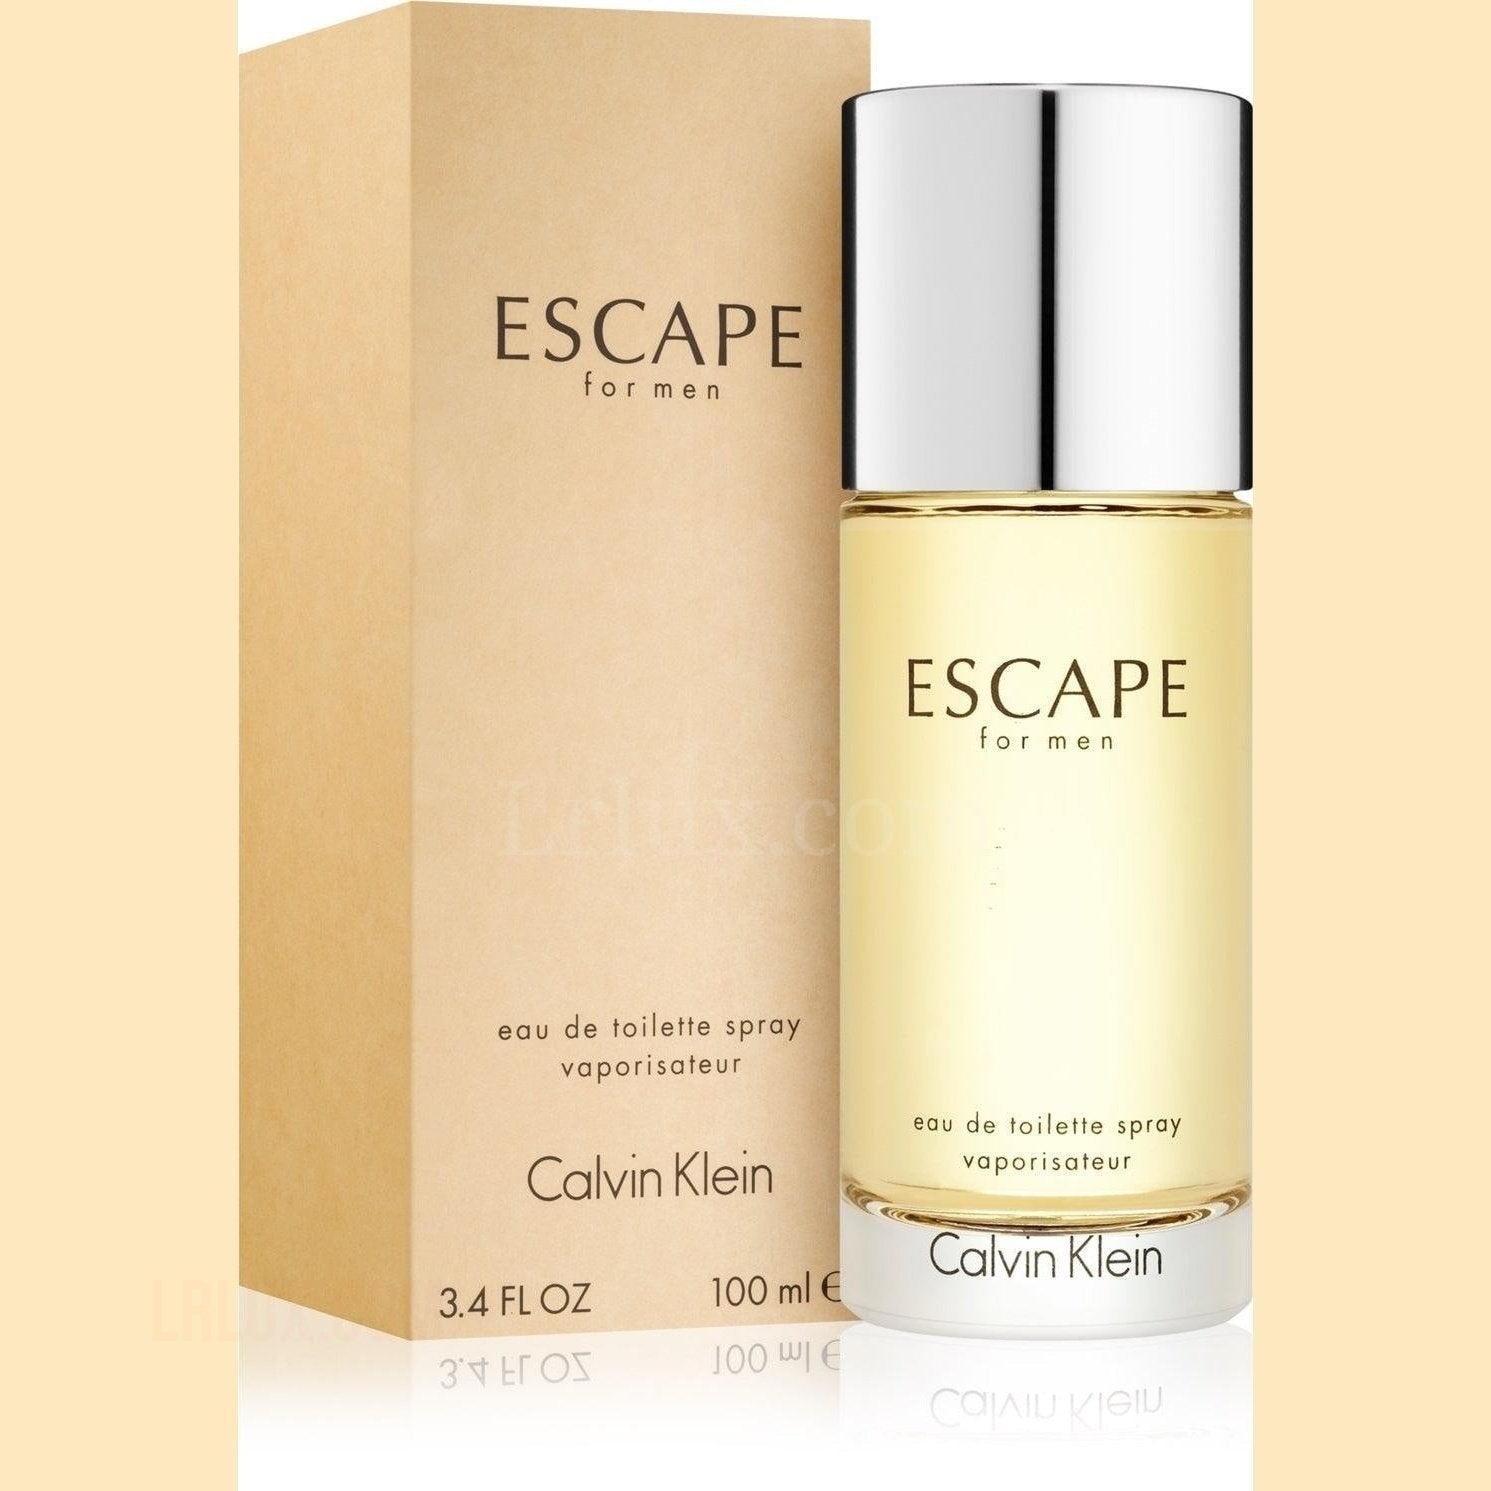 Escape for men 3.4 oz by Calvin Klein - Lrlux.com